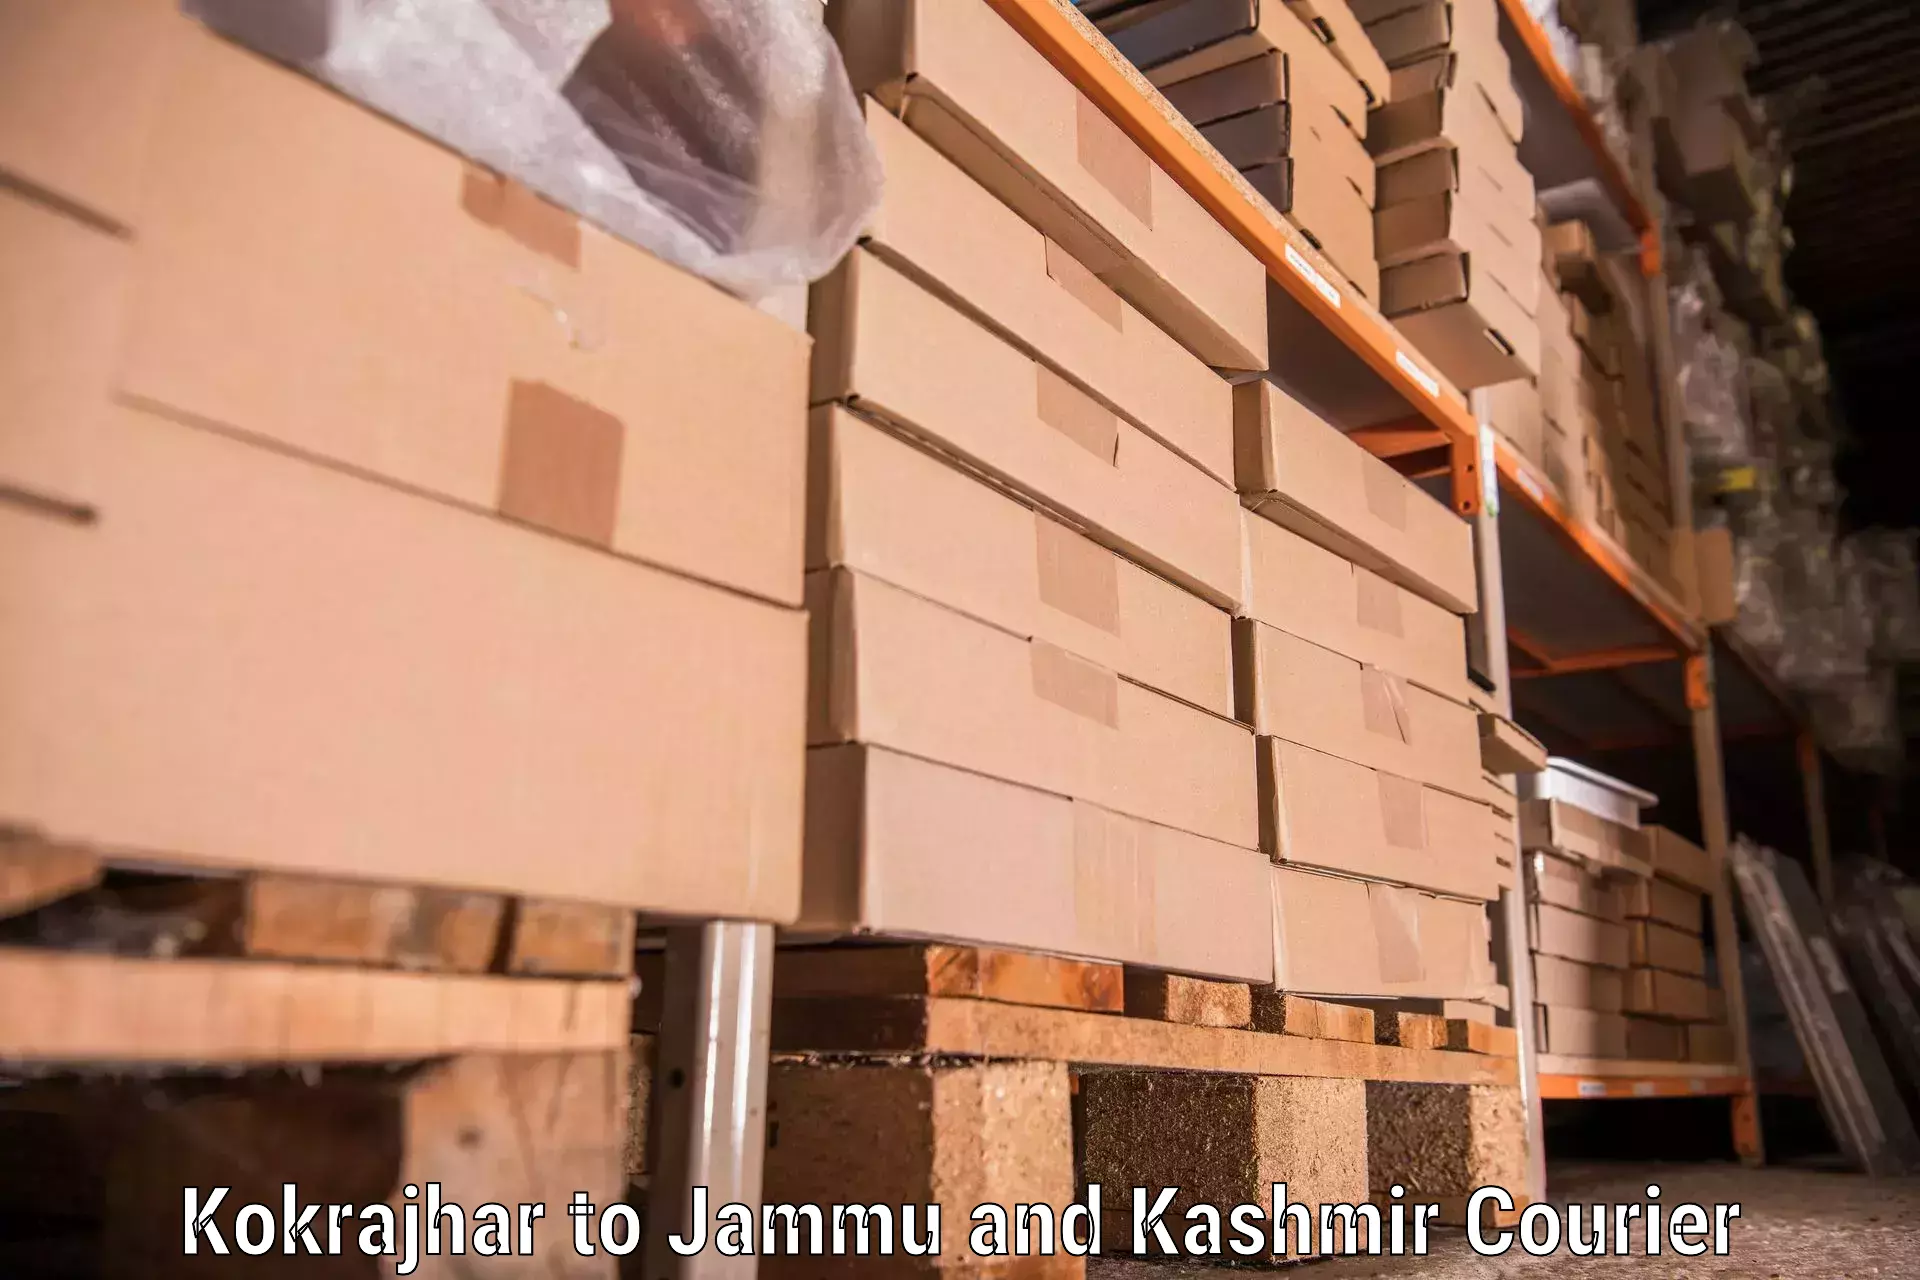 Dependable household movers Kokrajhar to Jammu and Kashmir